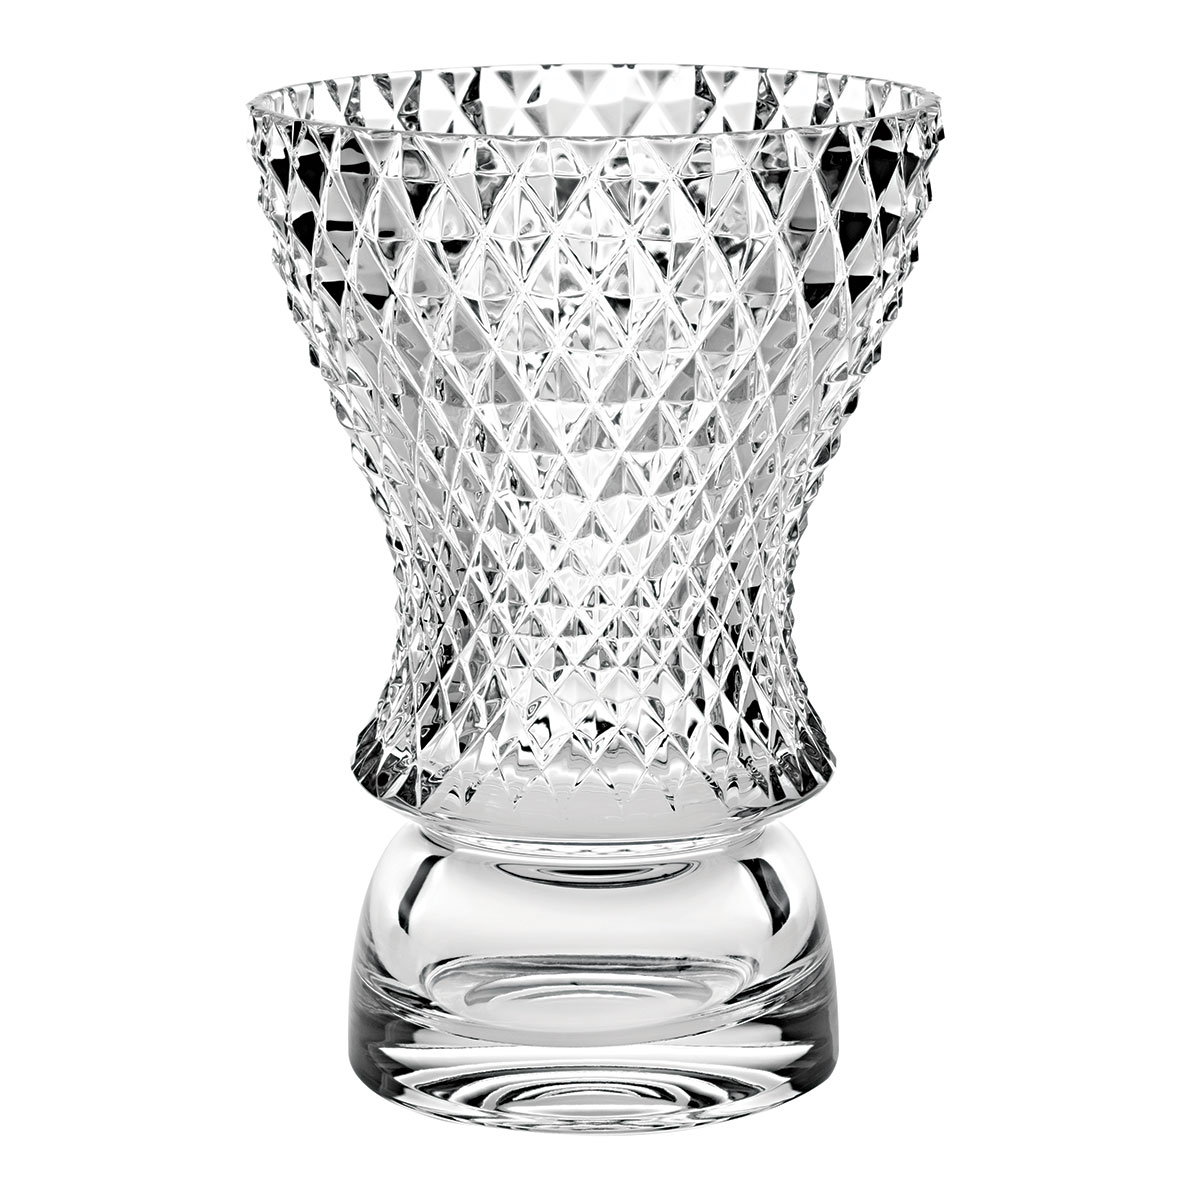 Vista Alegre Crystal Boreal 10.5" Vase